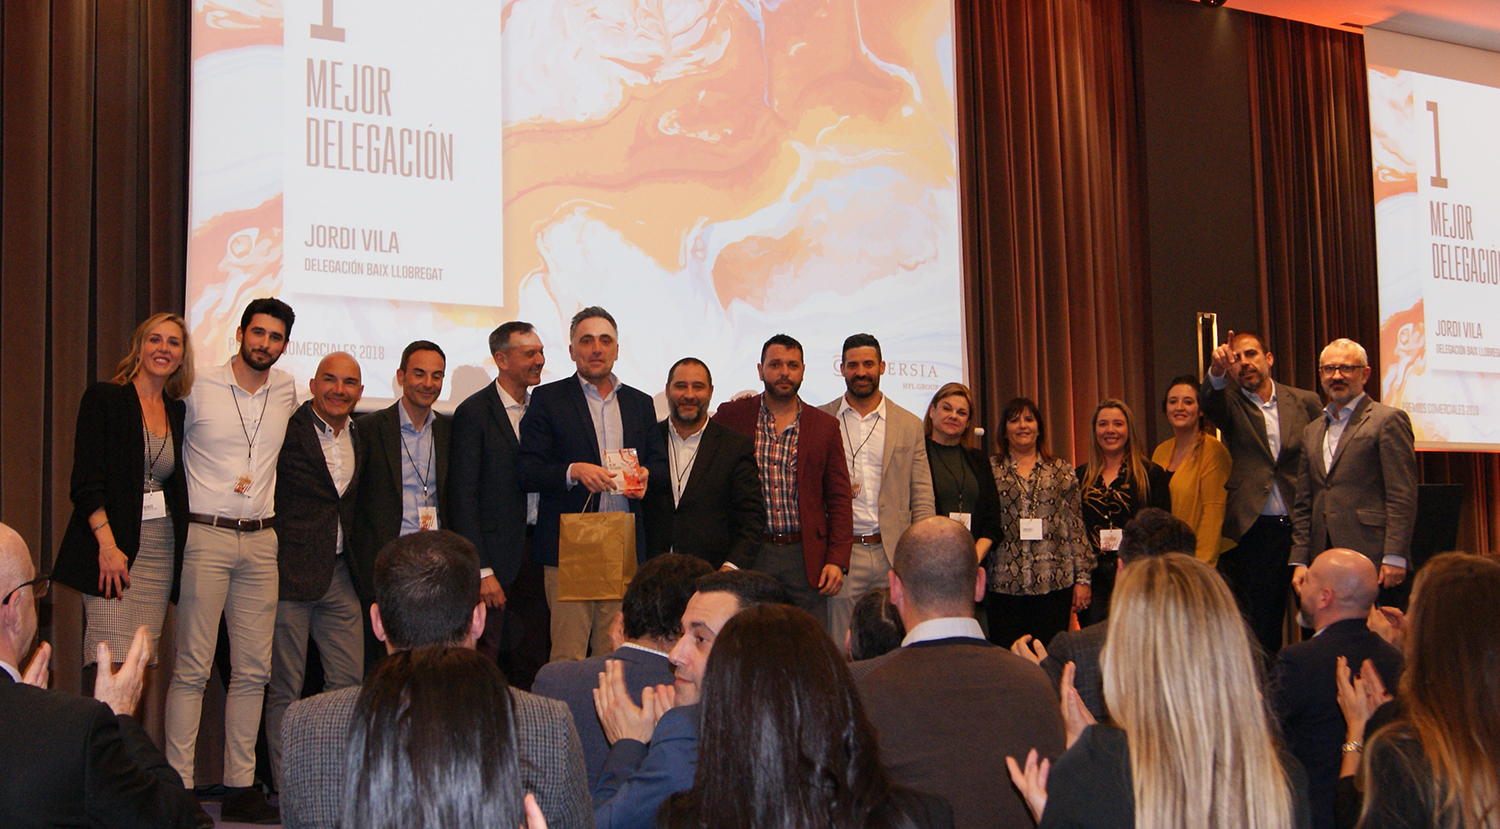 El equipo comercial de la Delegación de Baix Llobregat recogiendo el 1er Premio a Mejor Delegación de Conversia.